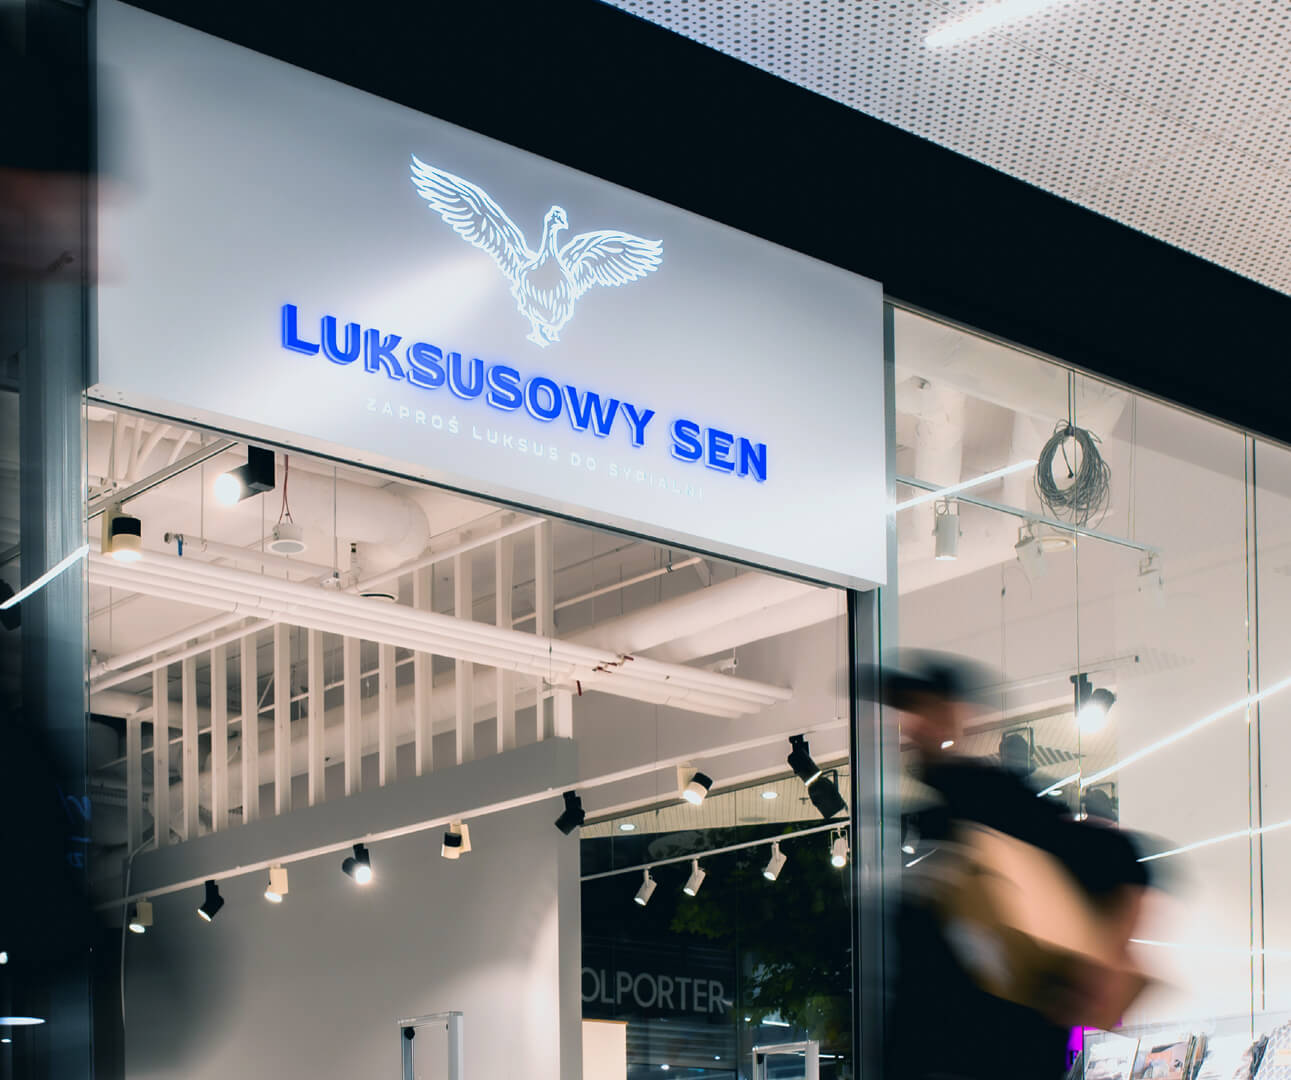 Luksusowy sen - Kaseton z dibondu nad wejściem do sklepu, podświetlany LED